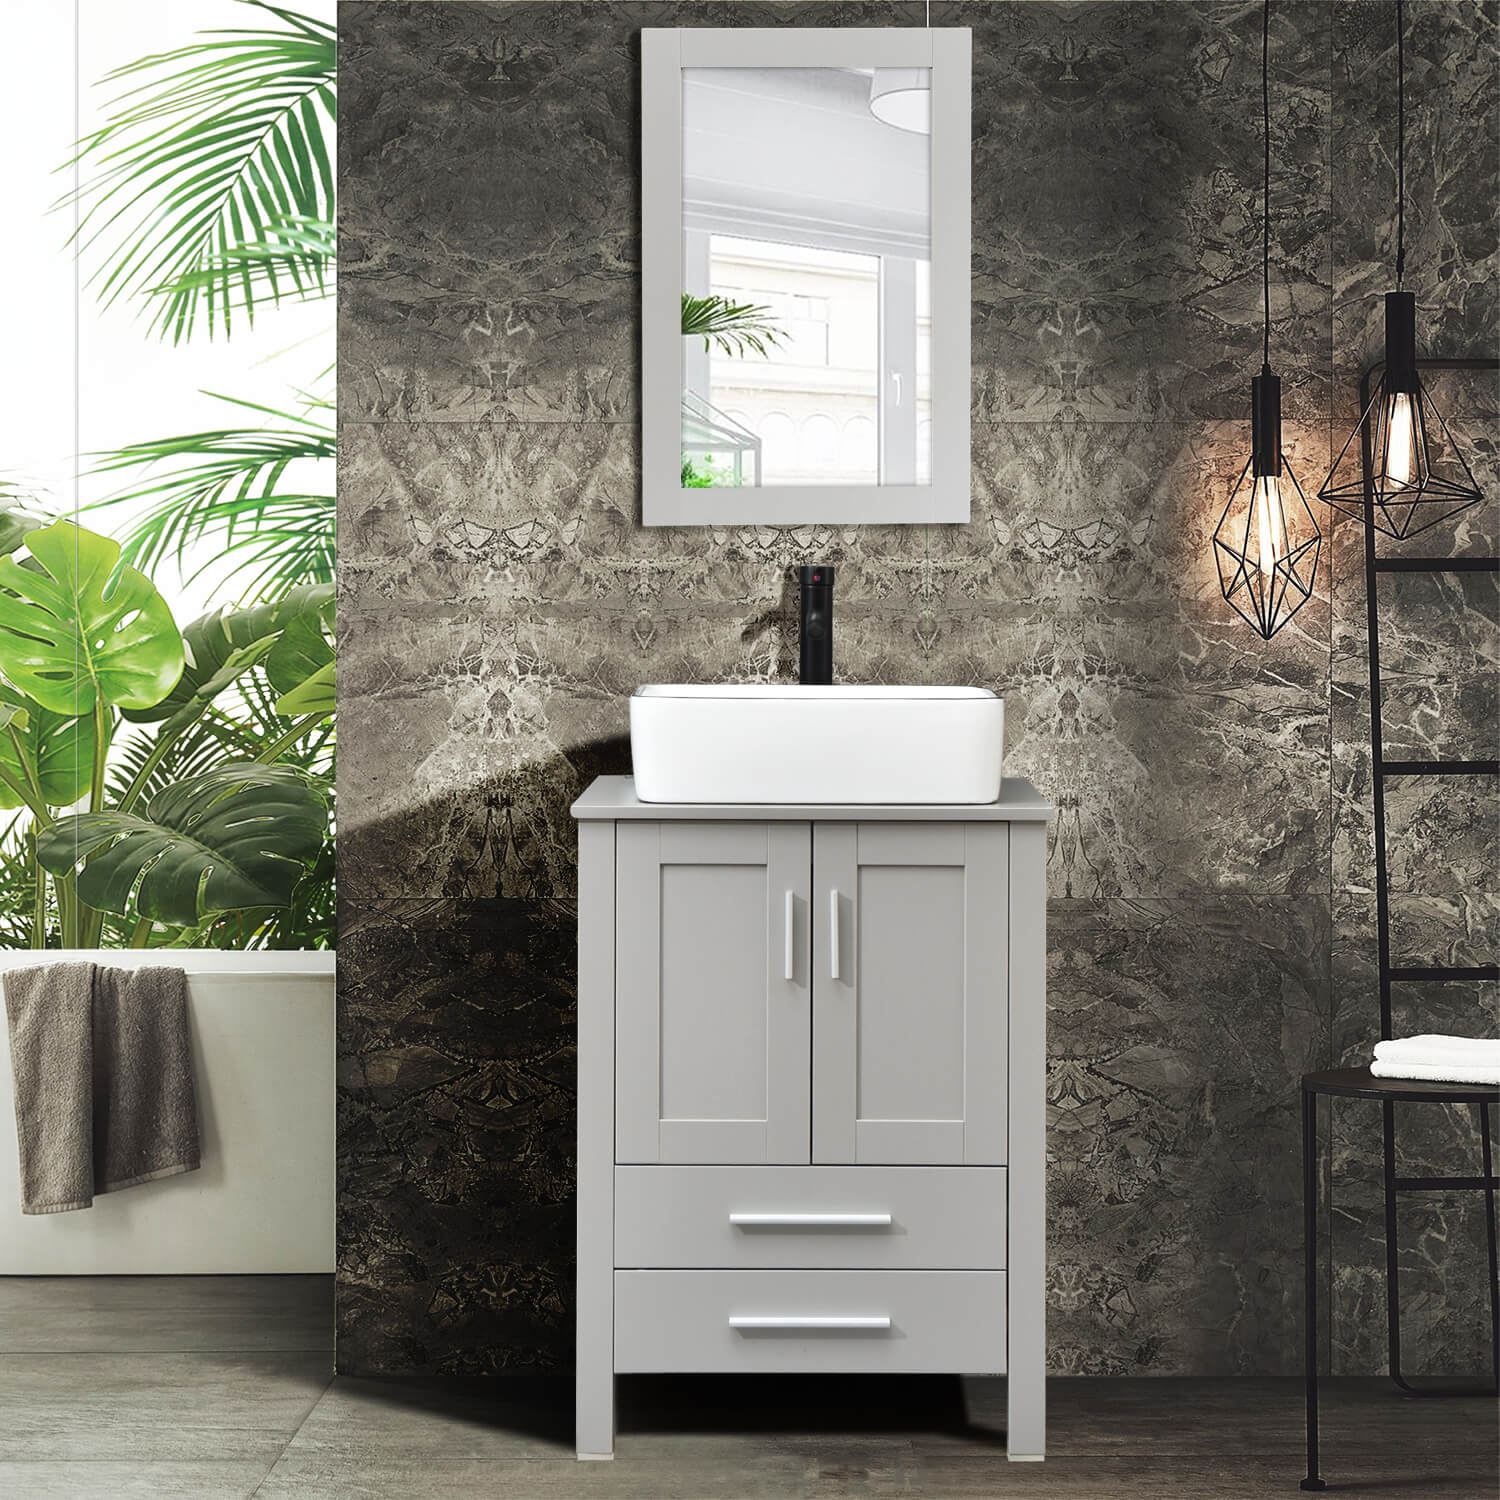 Elecwish gray wood bathroom vanity with white ceramic sink HW1125 displays in bathroom